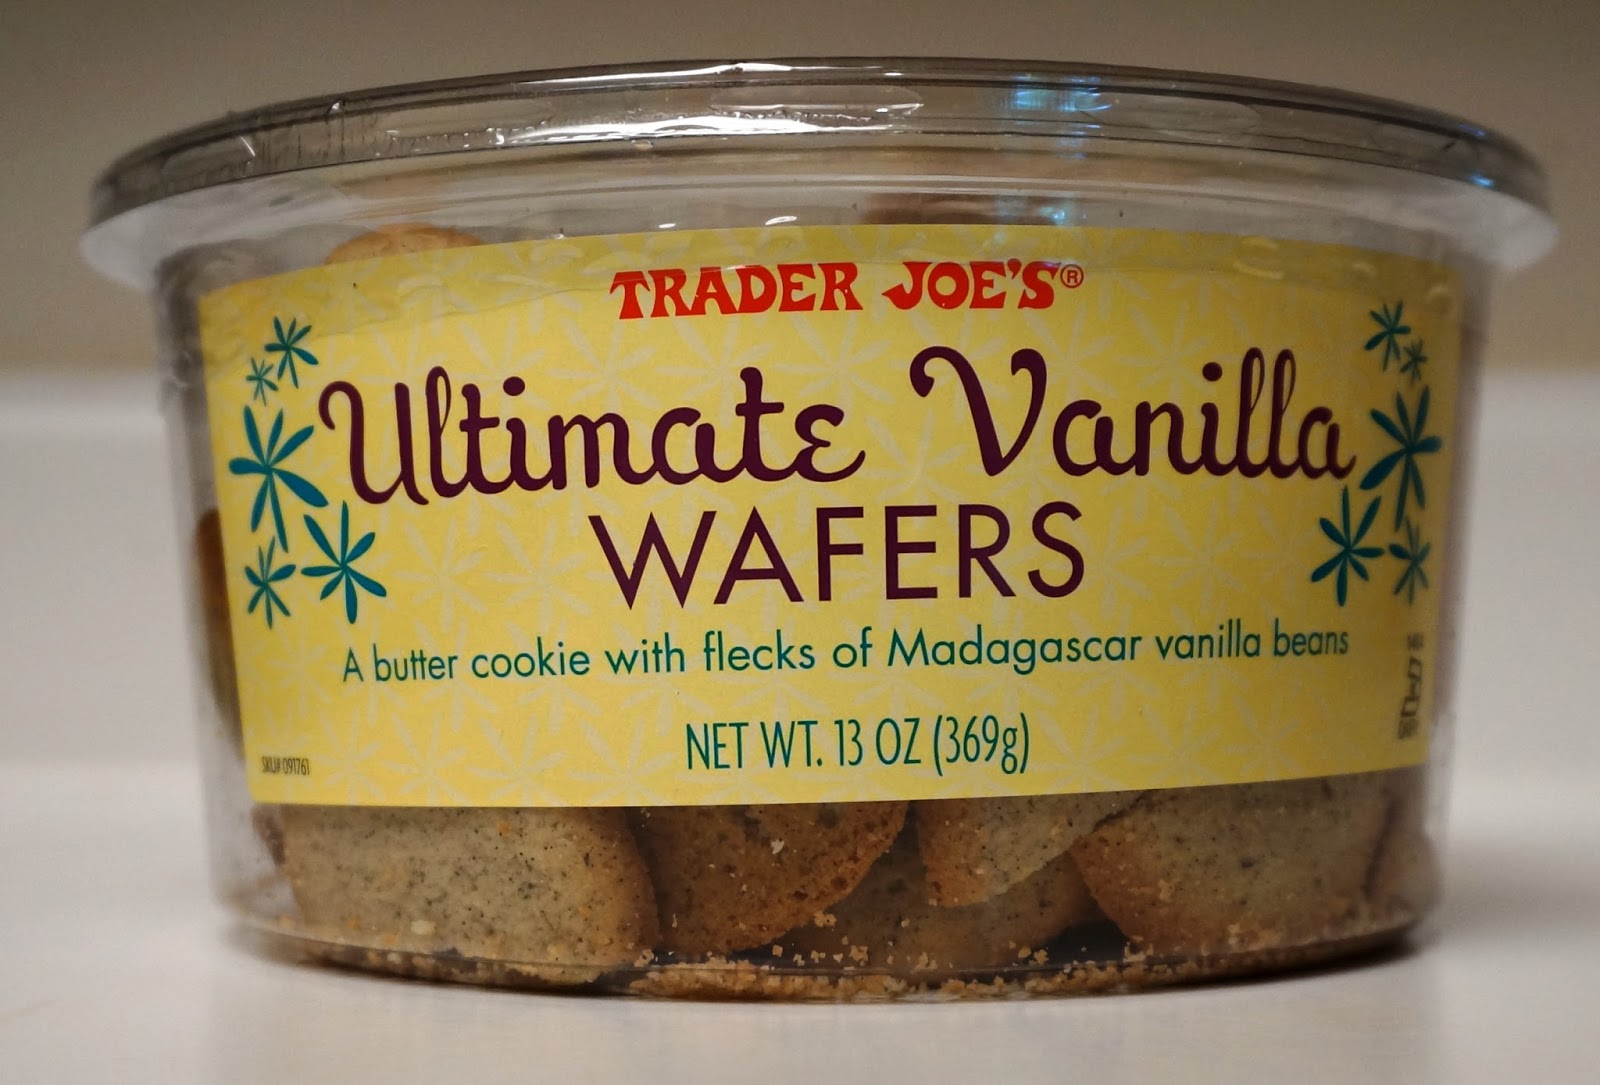 Exploring Trader Joe's Trader Joe's Reduced Guilt Woven Wheats Wafers